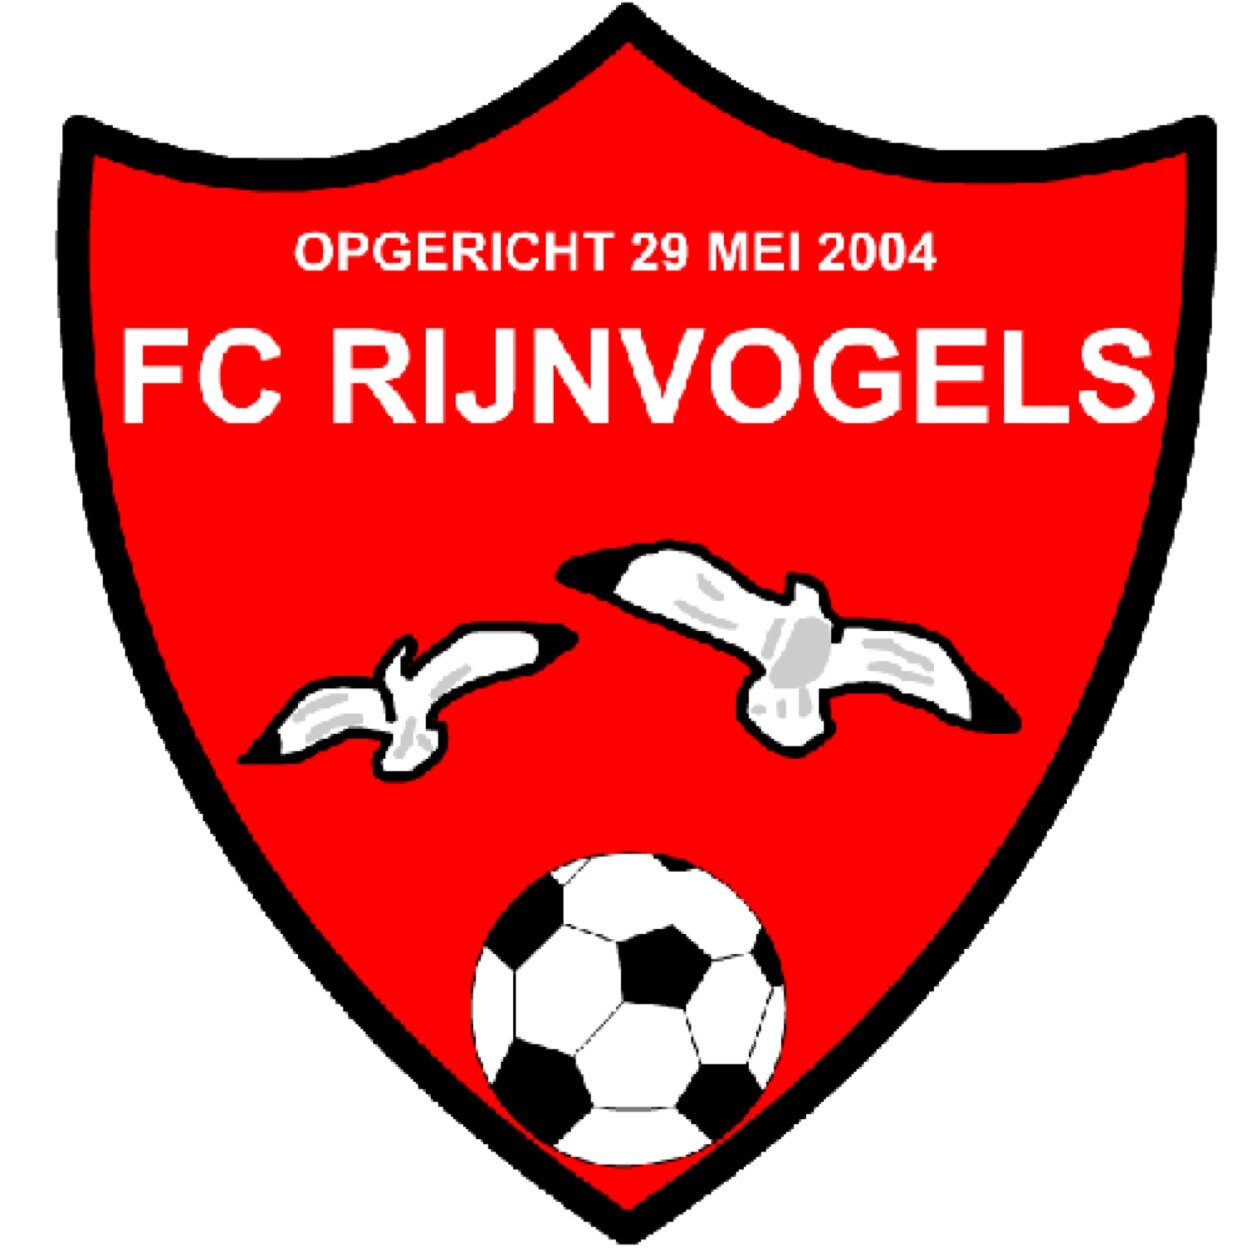 FC Rijnvogels VR